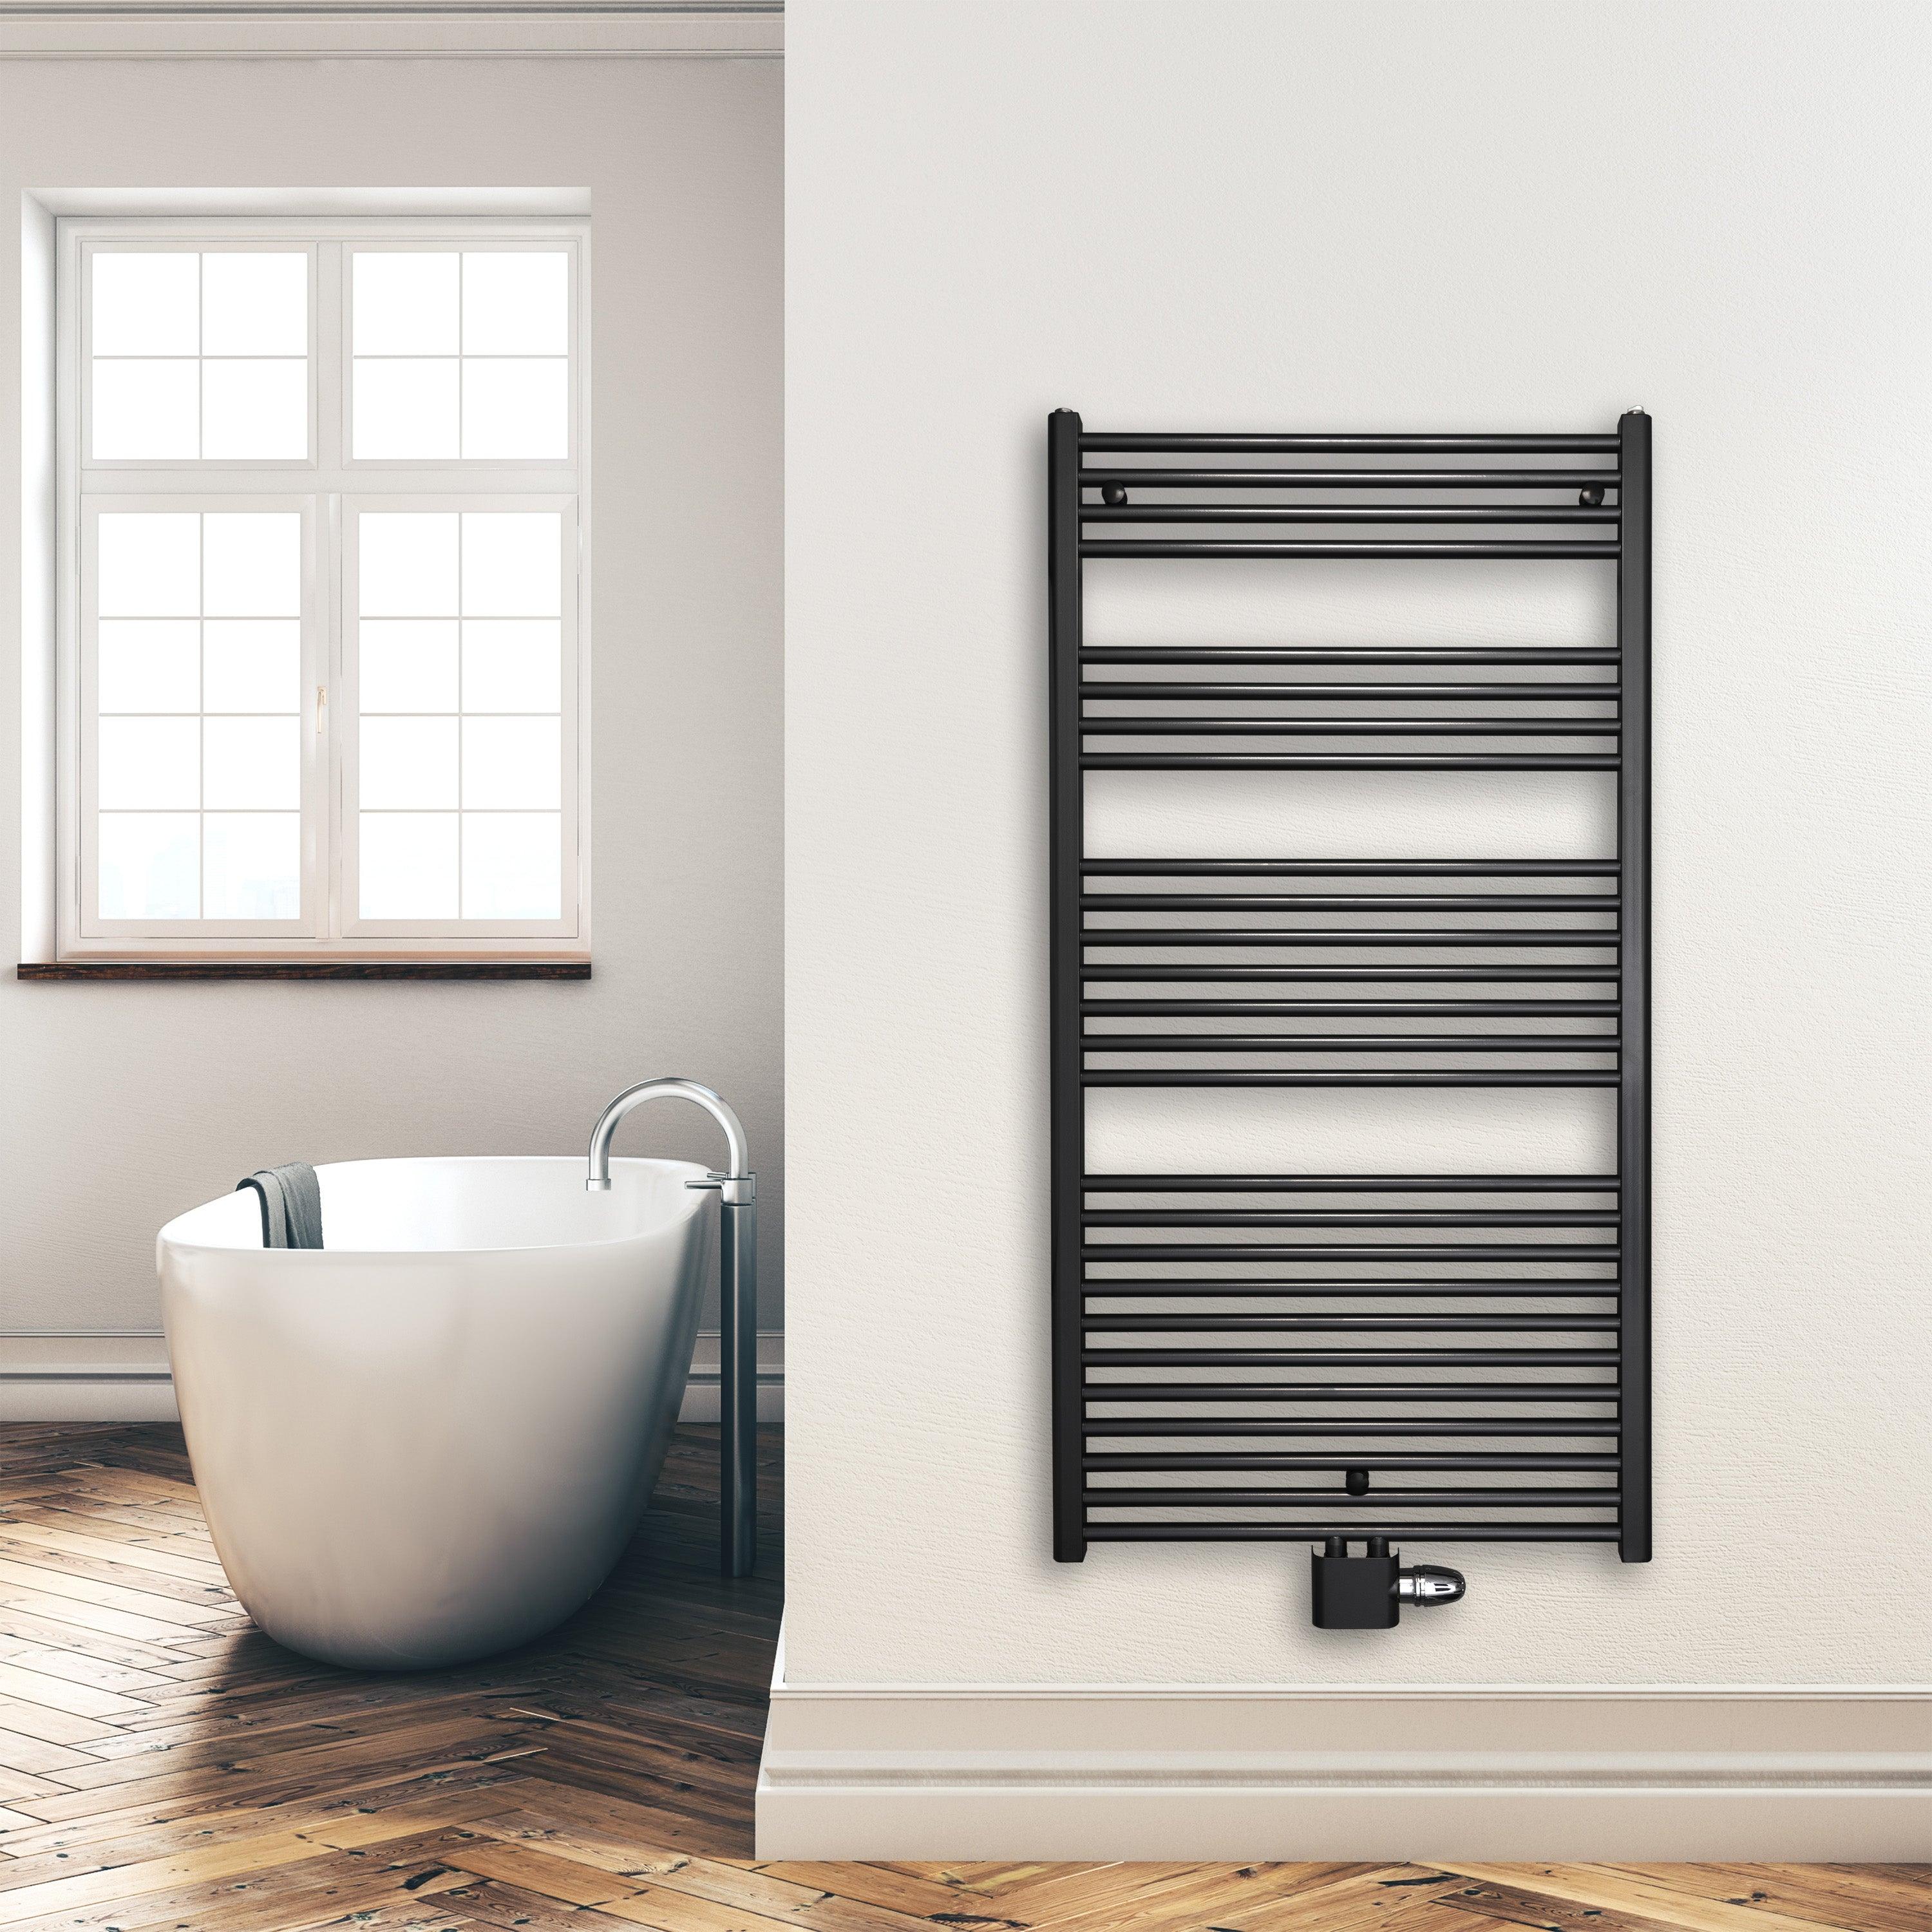 Badheizkörper 1424 x 750 mm gerade mit Mittenanschluss Handtuchhalter Badezimmer Heizung Handtuchwärmer schwarz Montagebeispiel - heizkoerper.shop